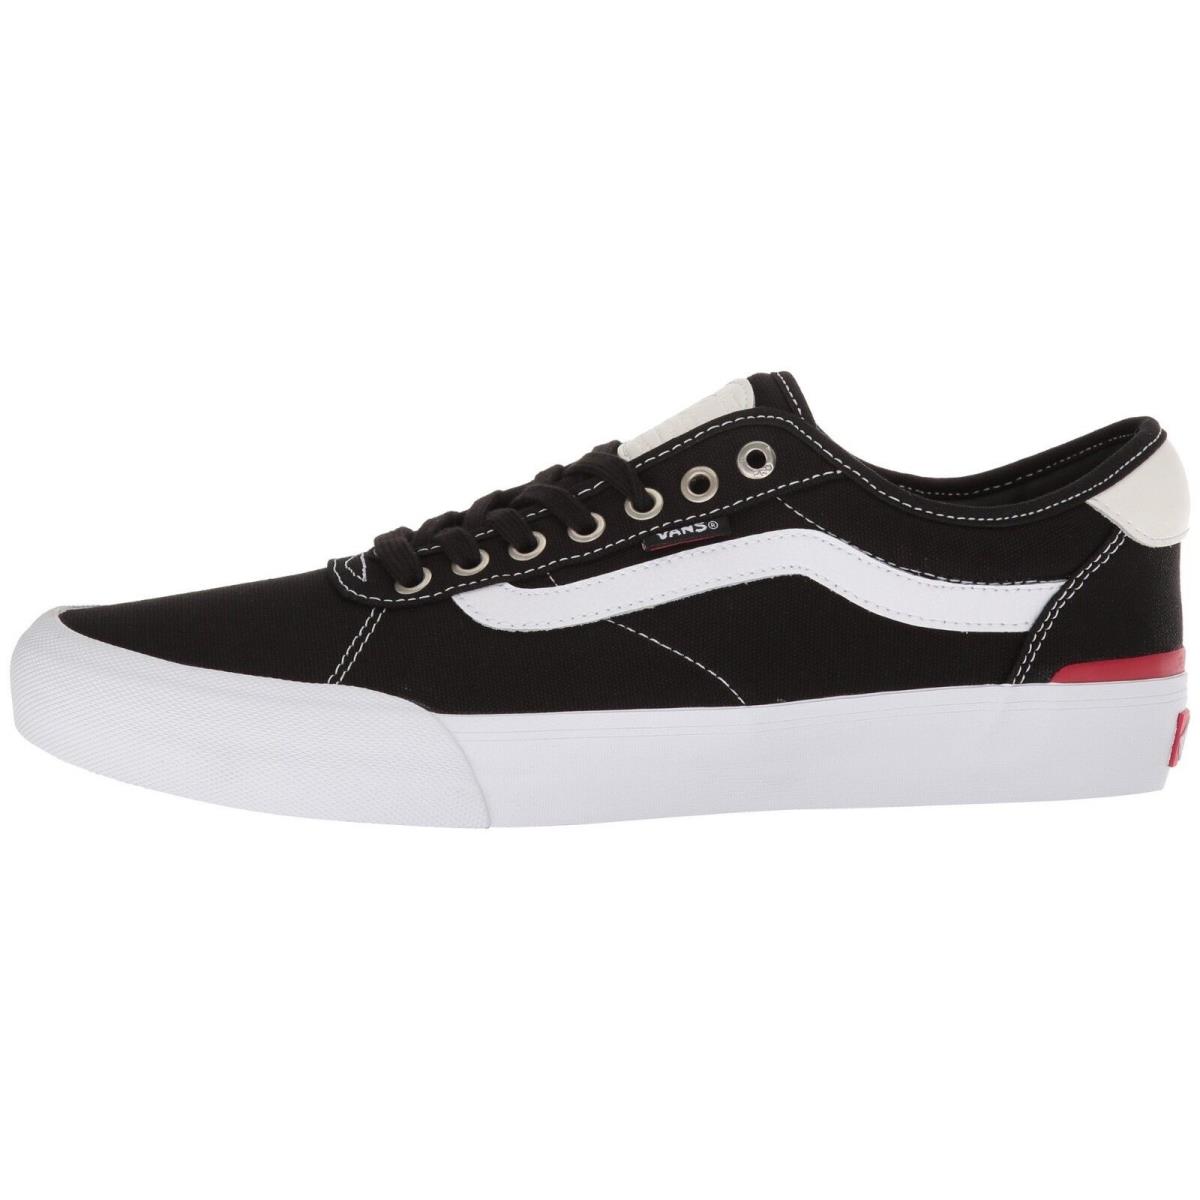 stout Beweren server Vans Chima Pro Canvas Black White Skate Shoes Men Sizes ----VN0A3MTI187 |  011661875418 - Vans shoes CHIMA PRO - BLACK / TRUE WHITE | SporTipTop